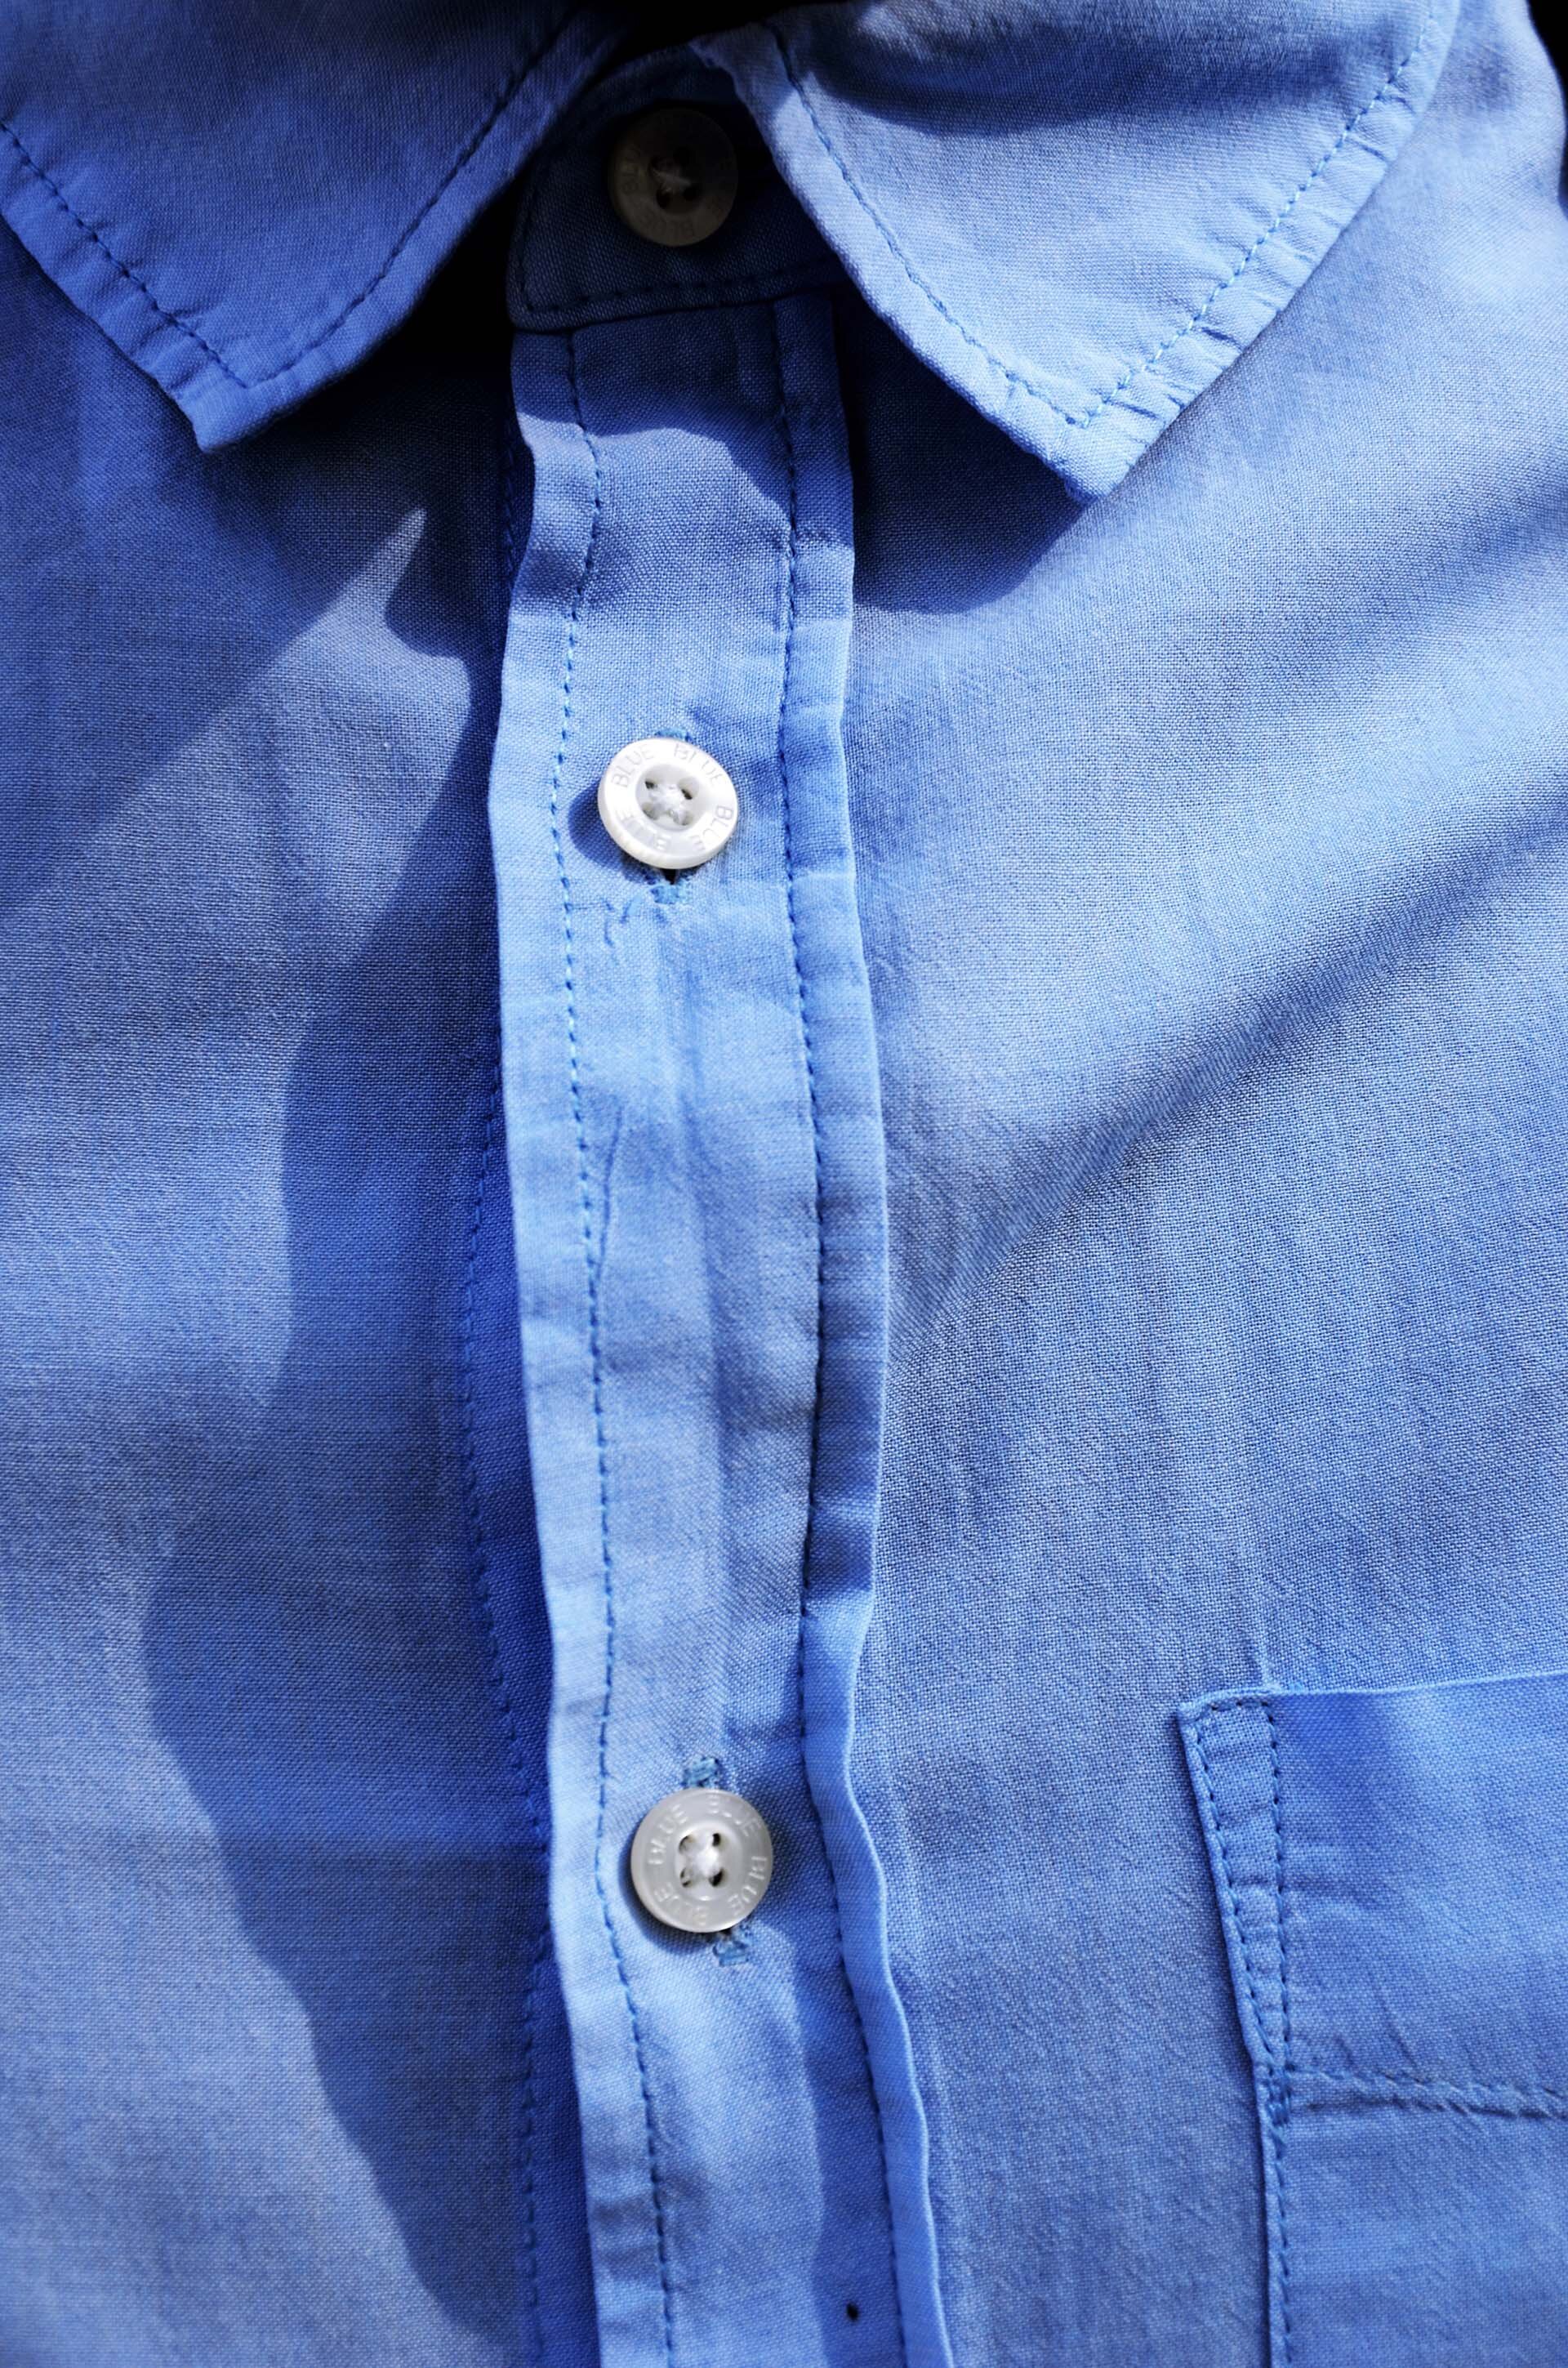 GMALE by Grzegorz Paliś, blog o modzie męskiej, mokasyny, niebieska koszula męska, obuwie męskie, Park Bednarskiego